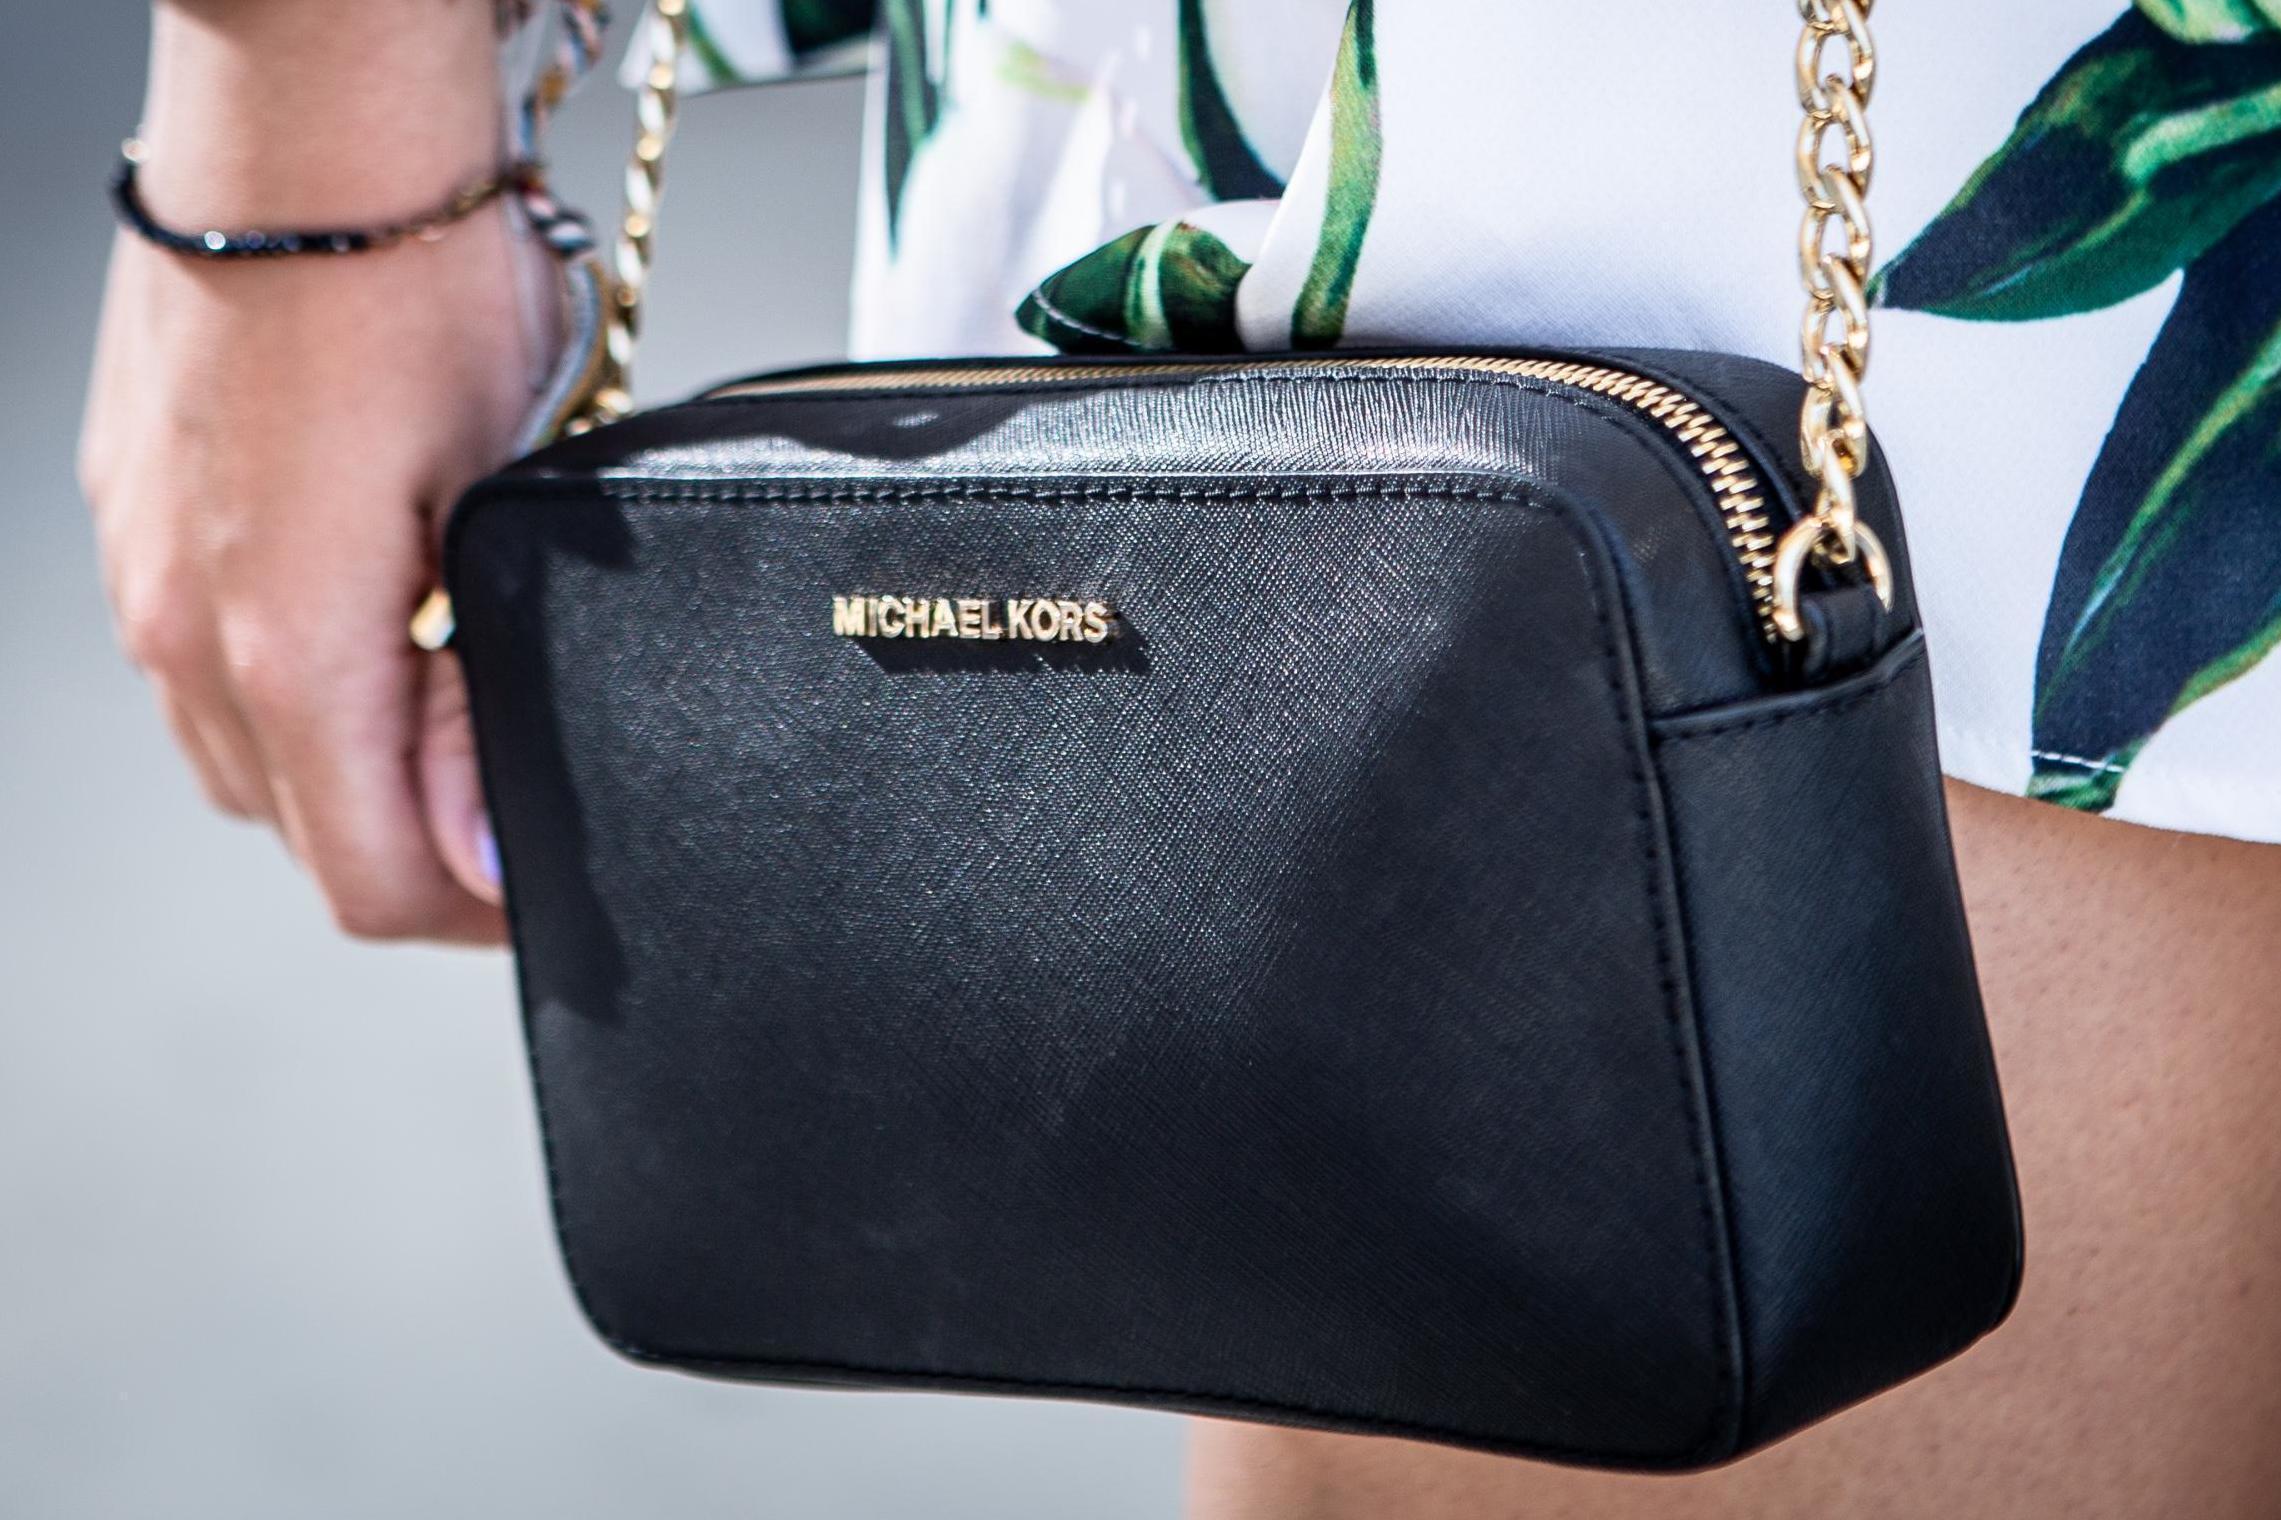 Handbag Brands Michael Kors Cheap Sale, 55% OFF | www 